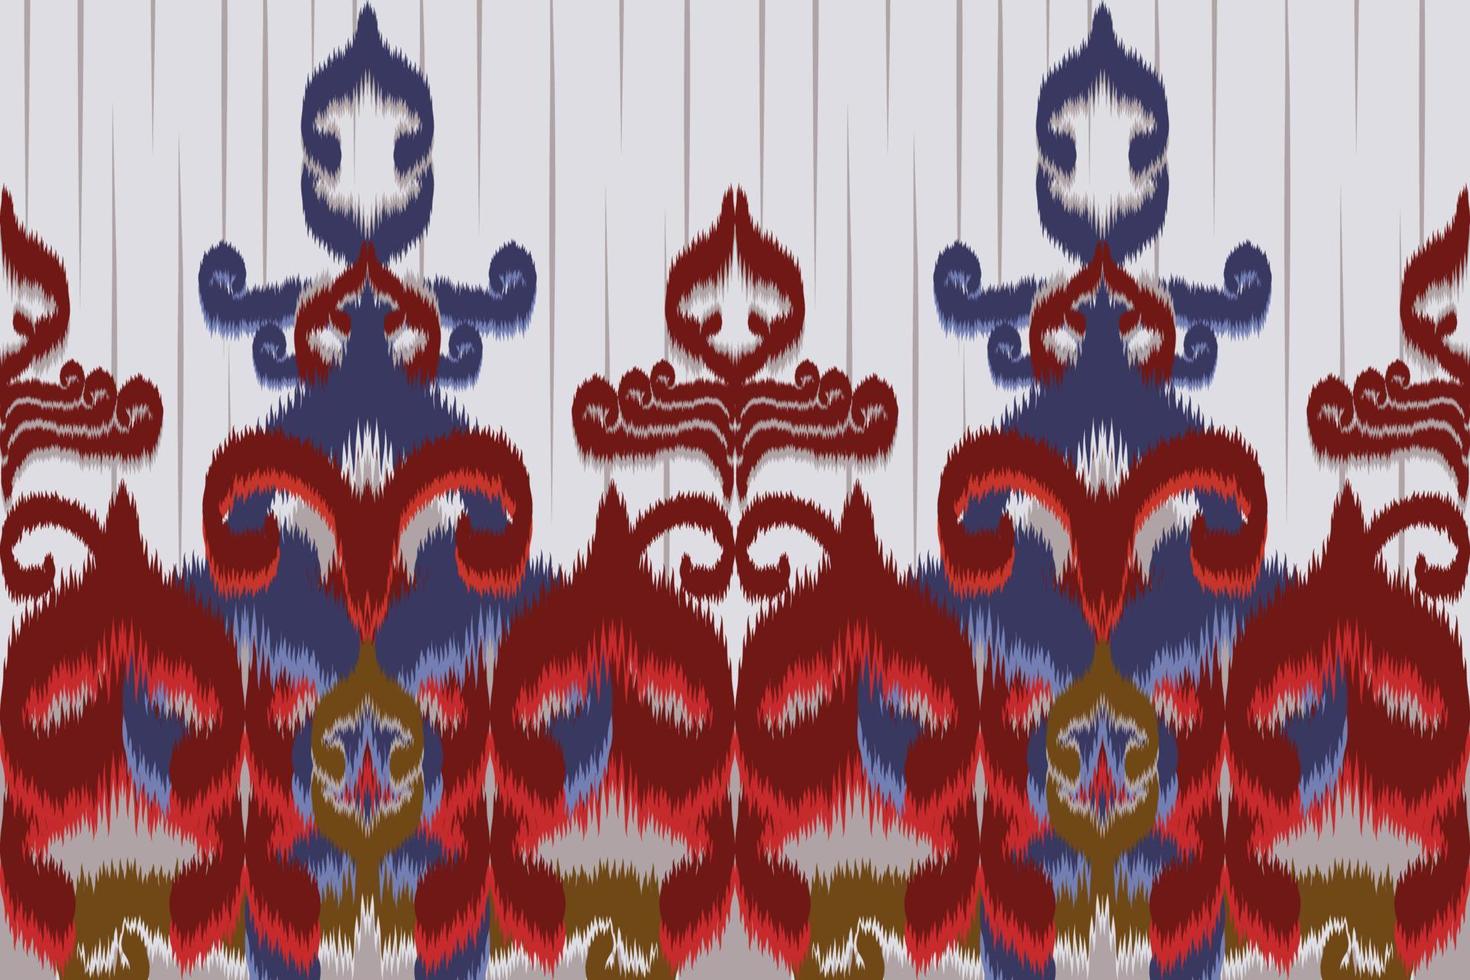 etnisk tyg mönster designad från geometrisk former etnisk asiatisk stil tyg mönster Begagnade för Hem dekoration, matta arbete, inomhus- och utomhus- använda sig av. vektor